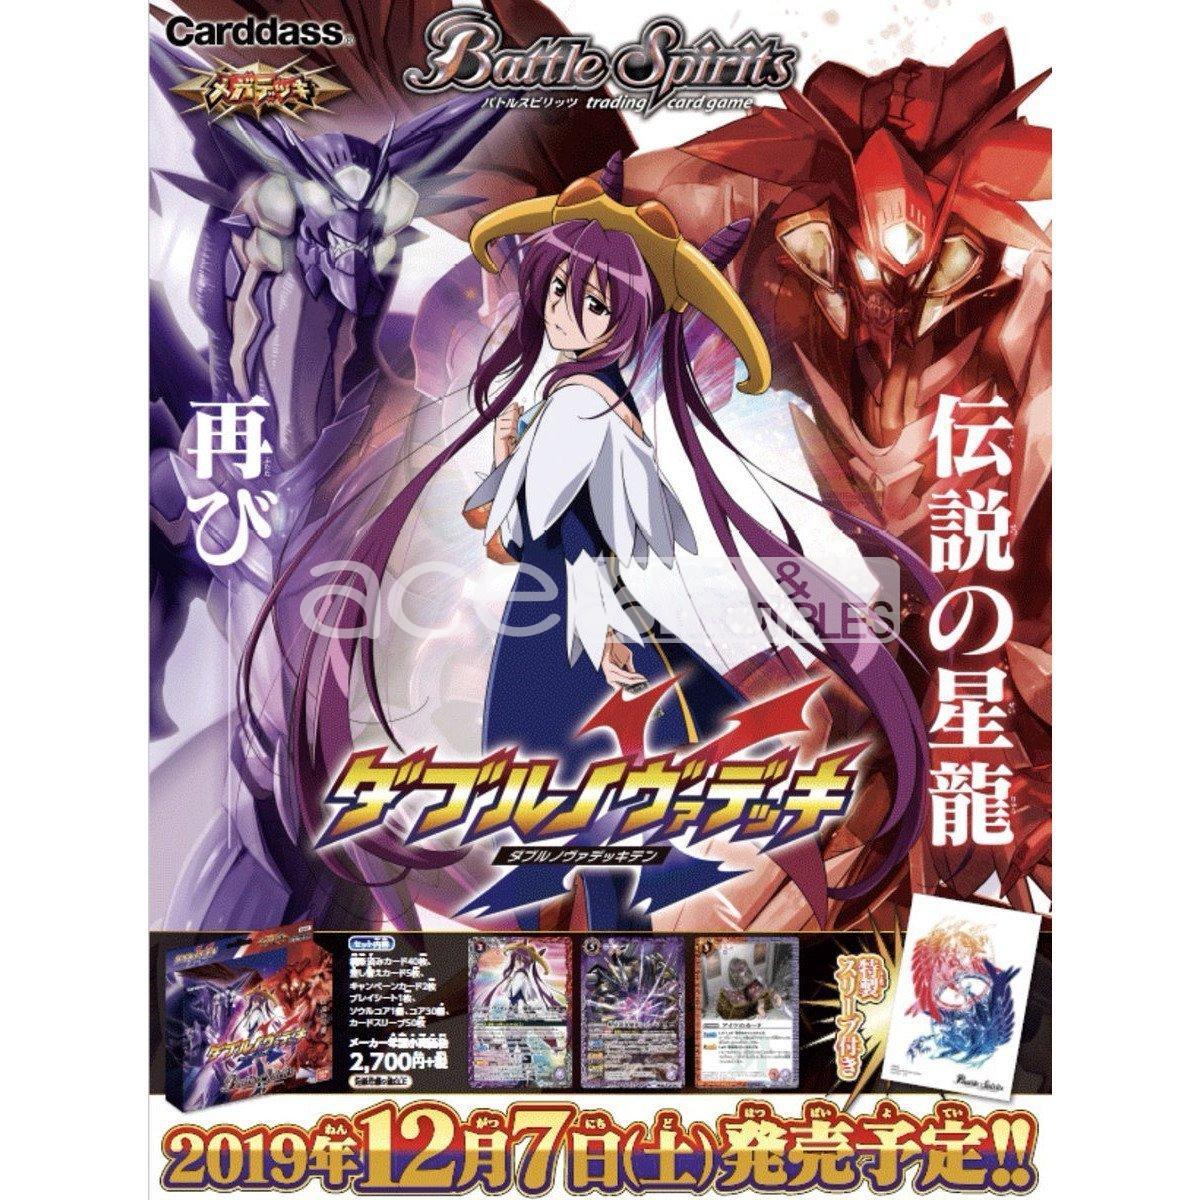 Battle Spirits Mega Deck Double Nova X [BS-SD51]-Bandai-Ace Cards &amp; Collectibles